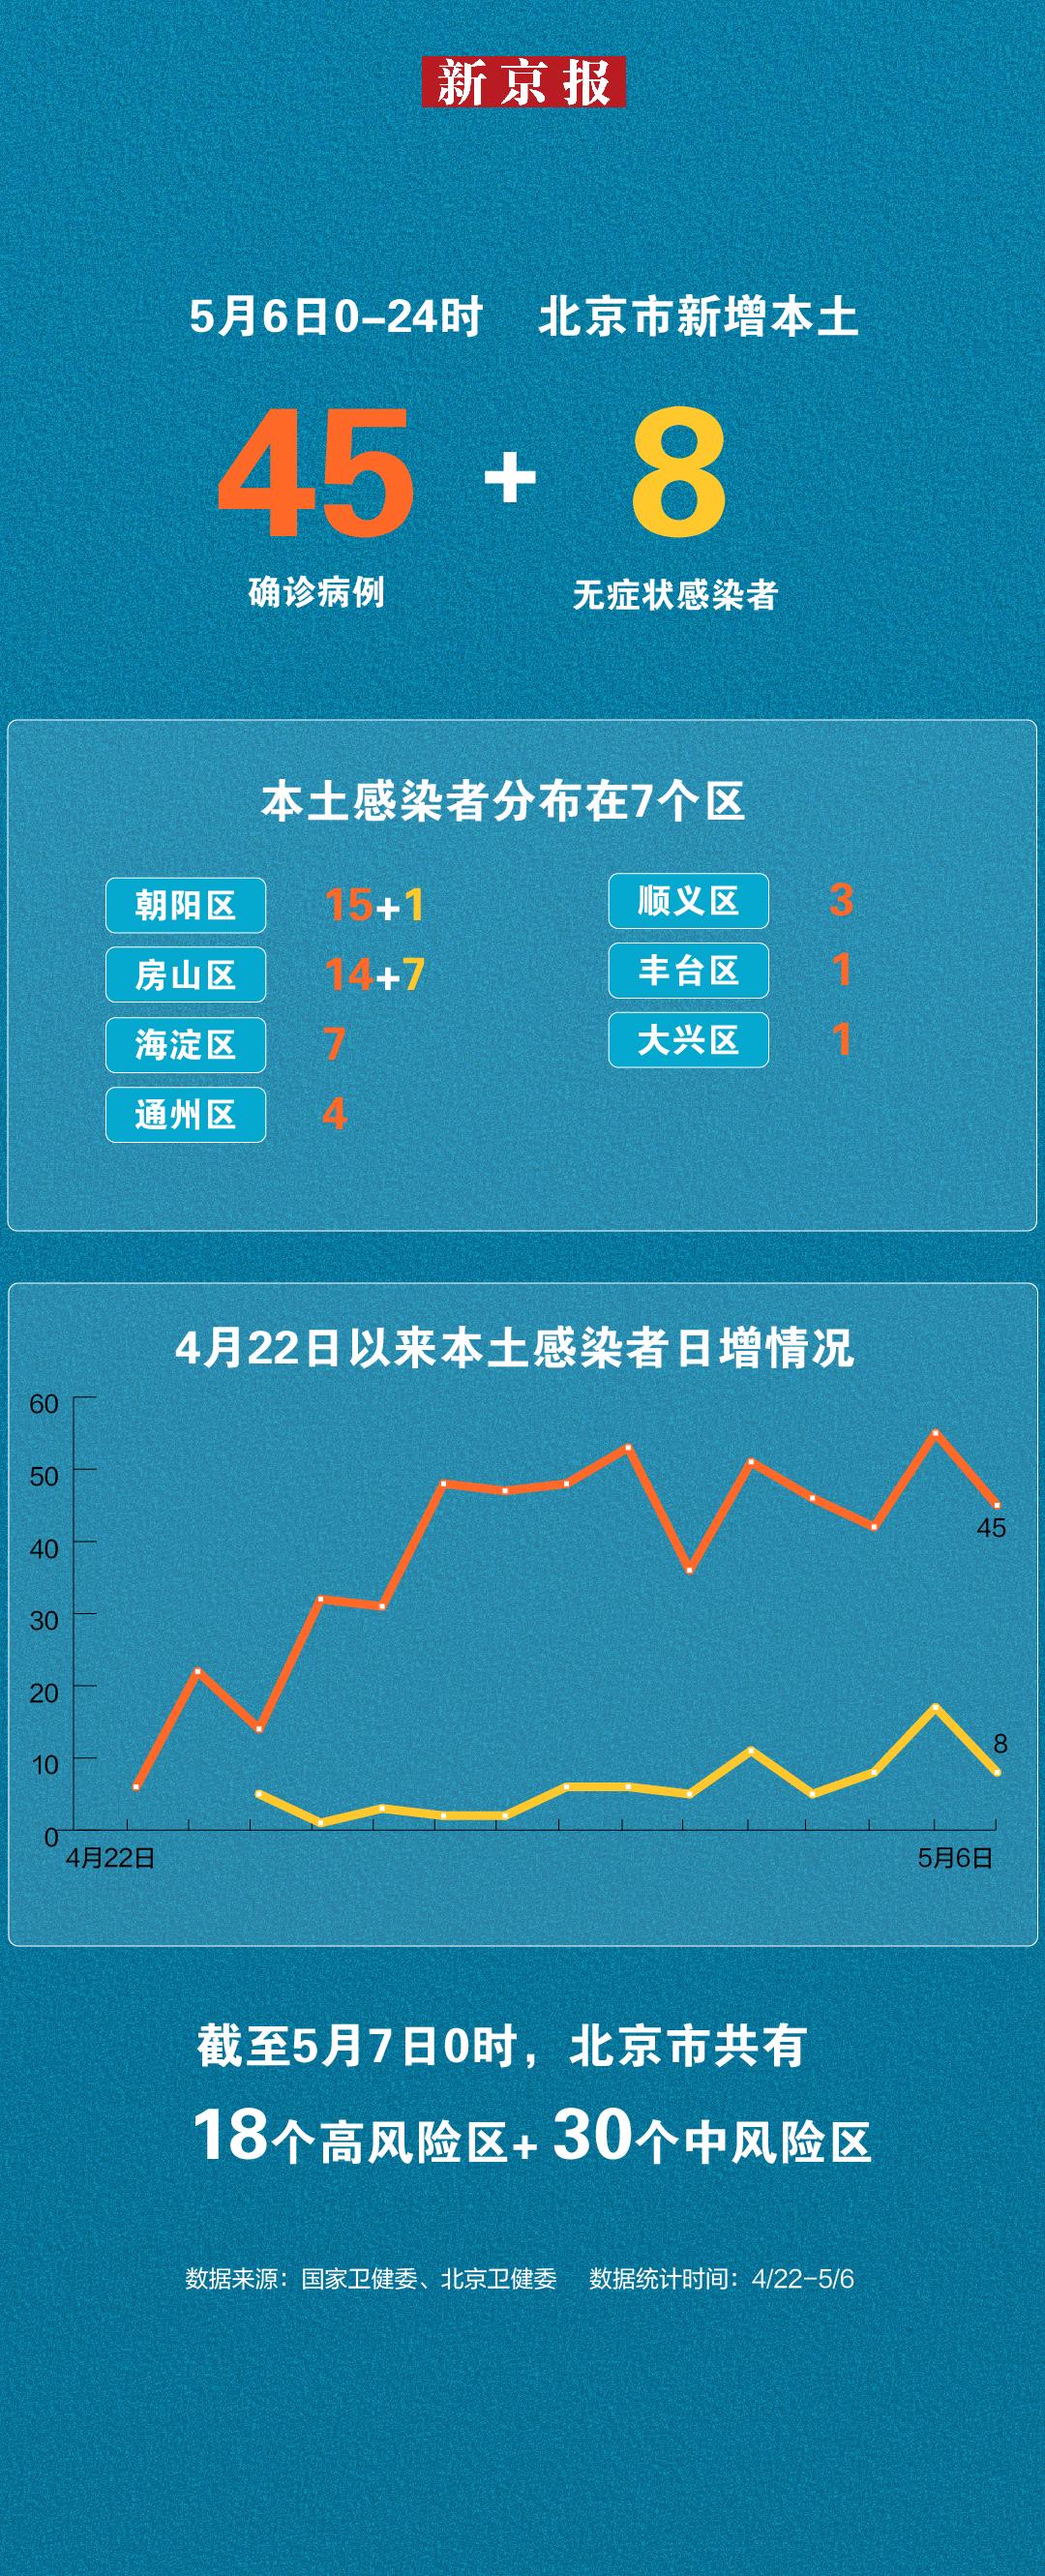 北京5月6日新增本土“45+8” 一图看懂感染者分布